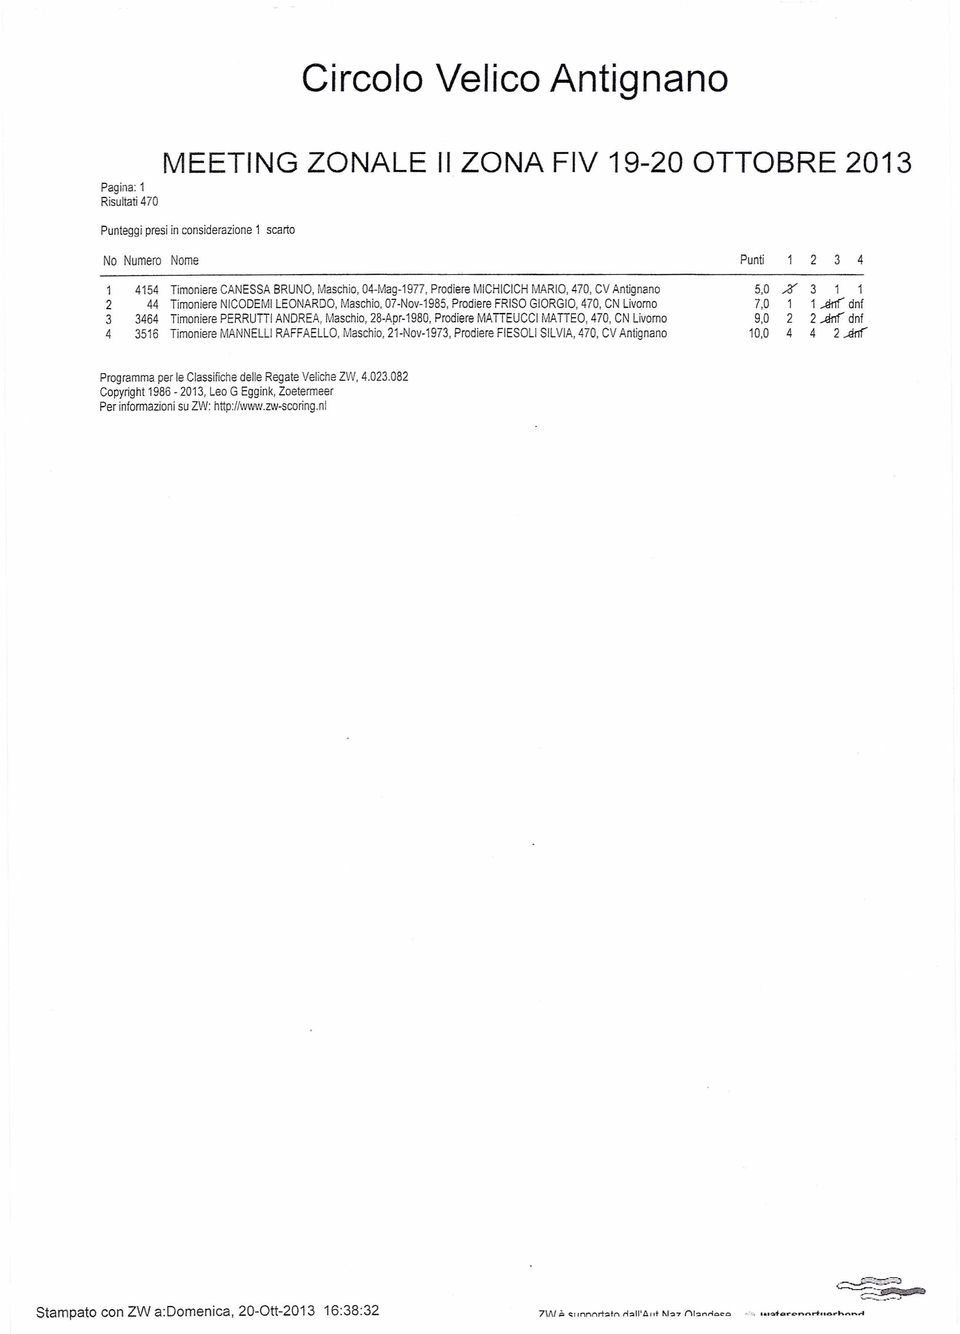 Timoniere MANNELLI RAFFAELLO, Maschio, -Nov-97, Prodiere FIESOLI SILVIA, 70, CV Antignano Punti,0 % 7,0 Artf dnf 9,0 Artf dnf 0,0 Artf Programma per le Classifiche